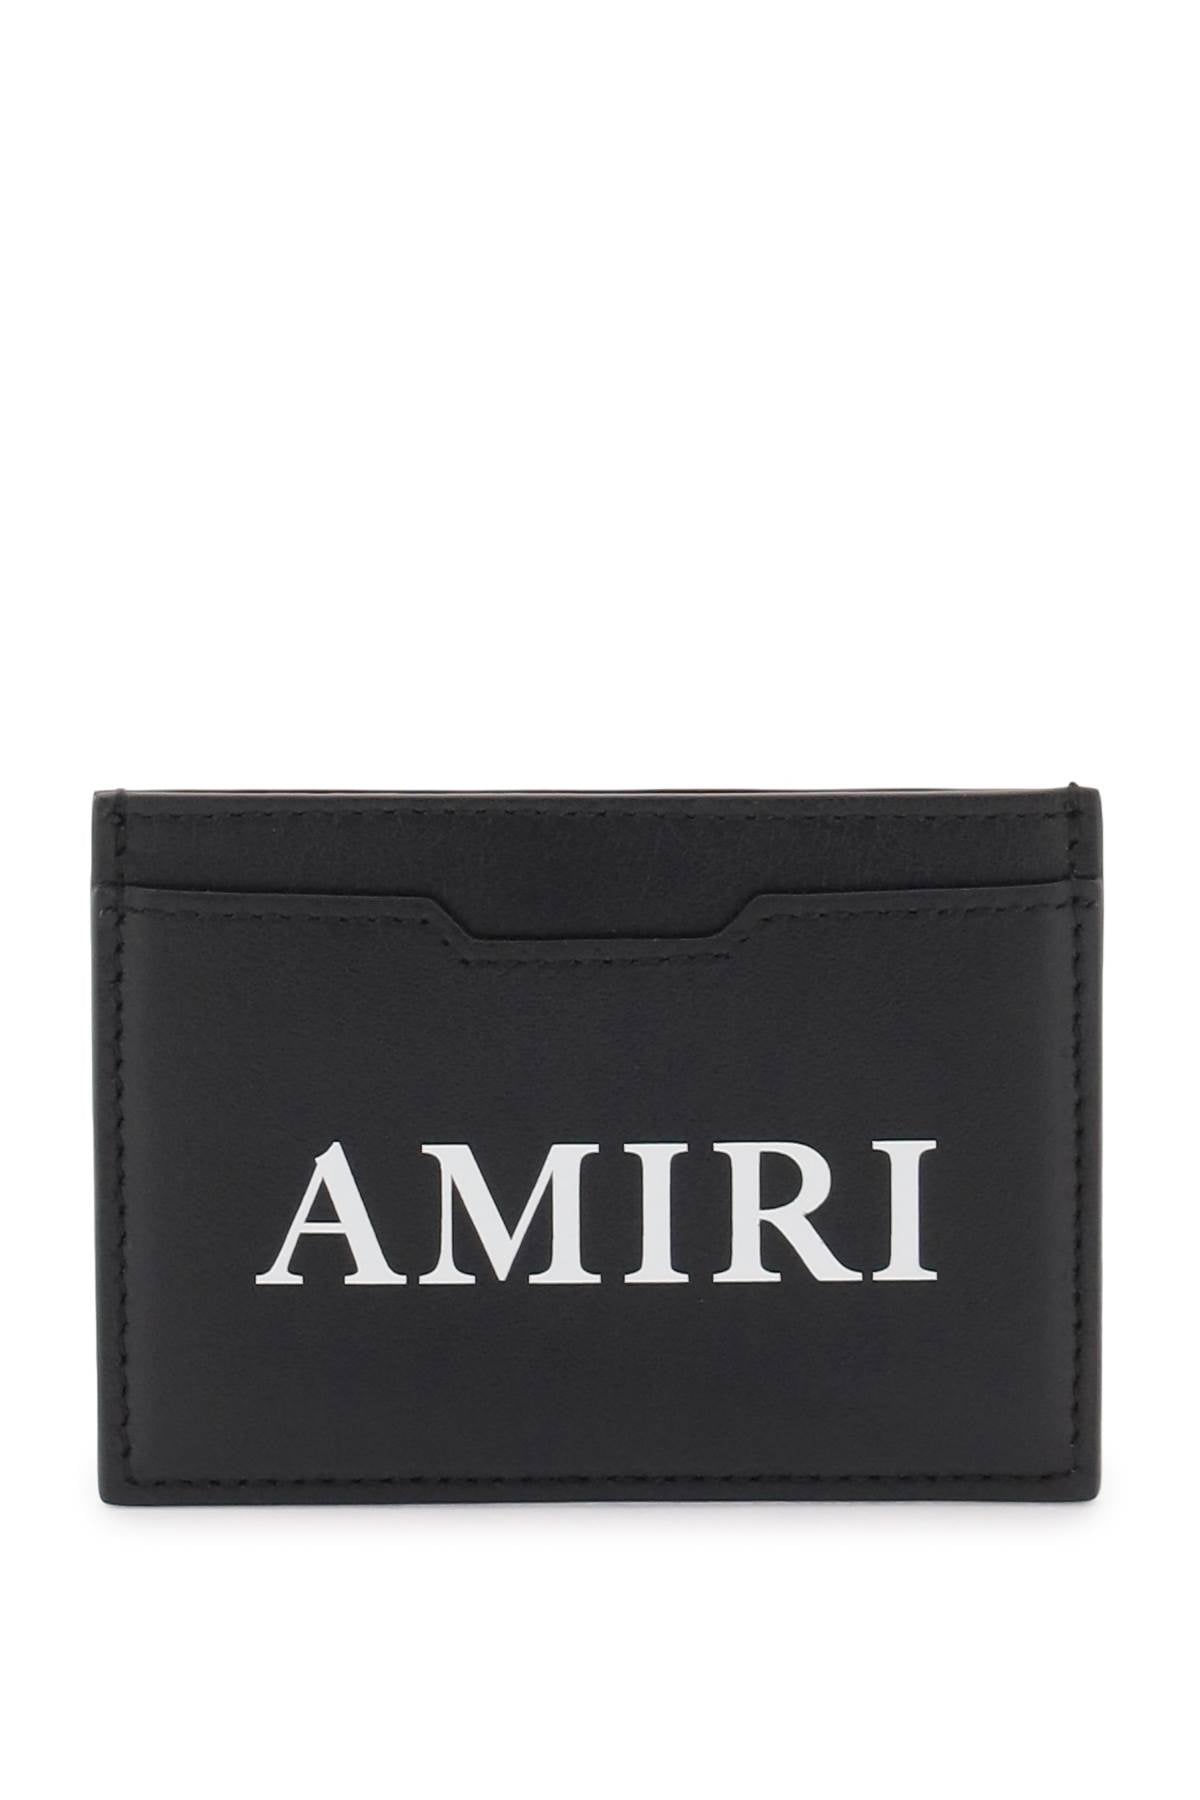 Amiri Amiri logo cardholder